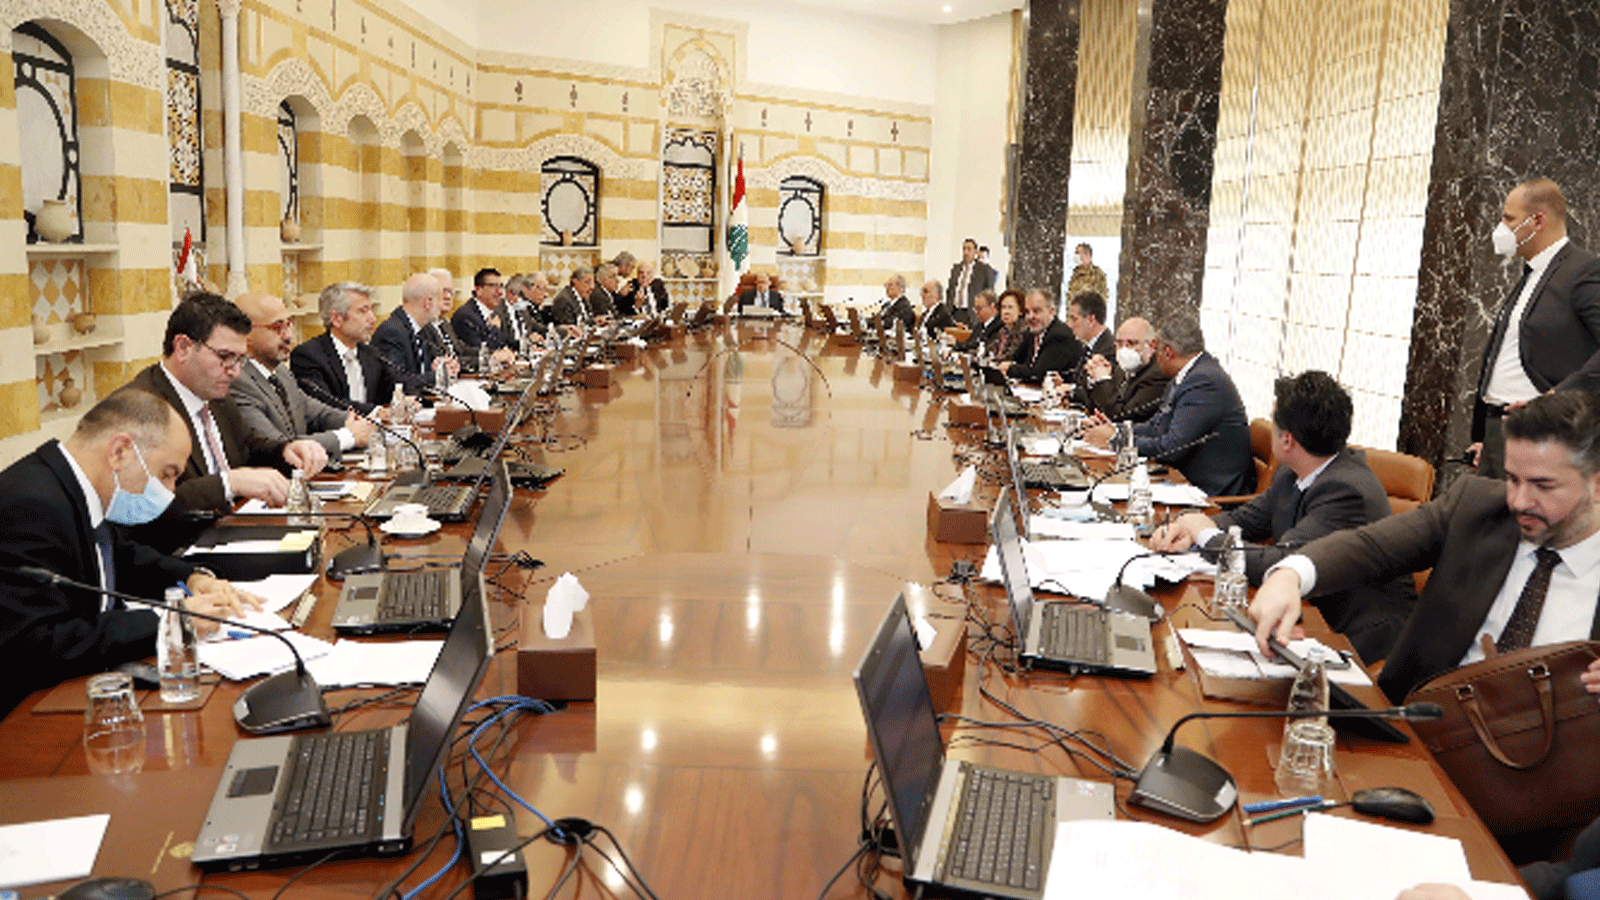  إتمام جلسة مجلس الوزراء برئاسة عون للموافقة على مشروع قانون الميزانية لعام 2022(الوكالة الوطنية للاعلام)